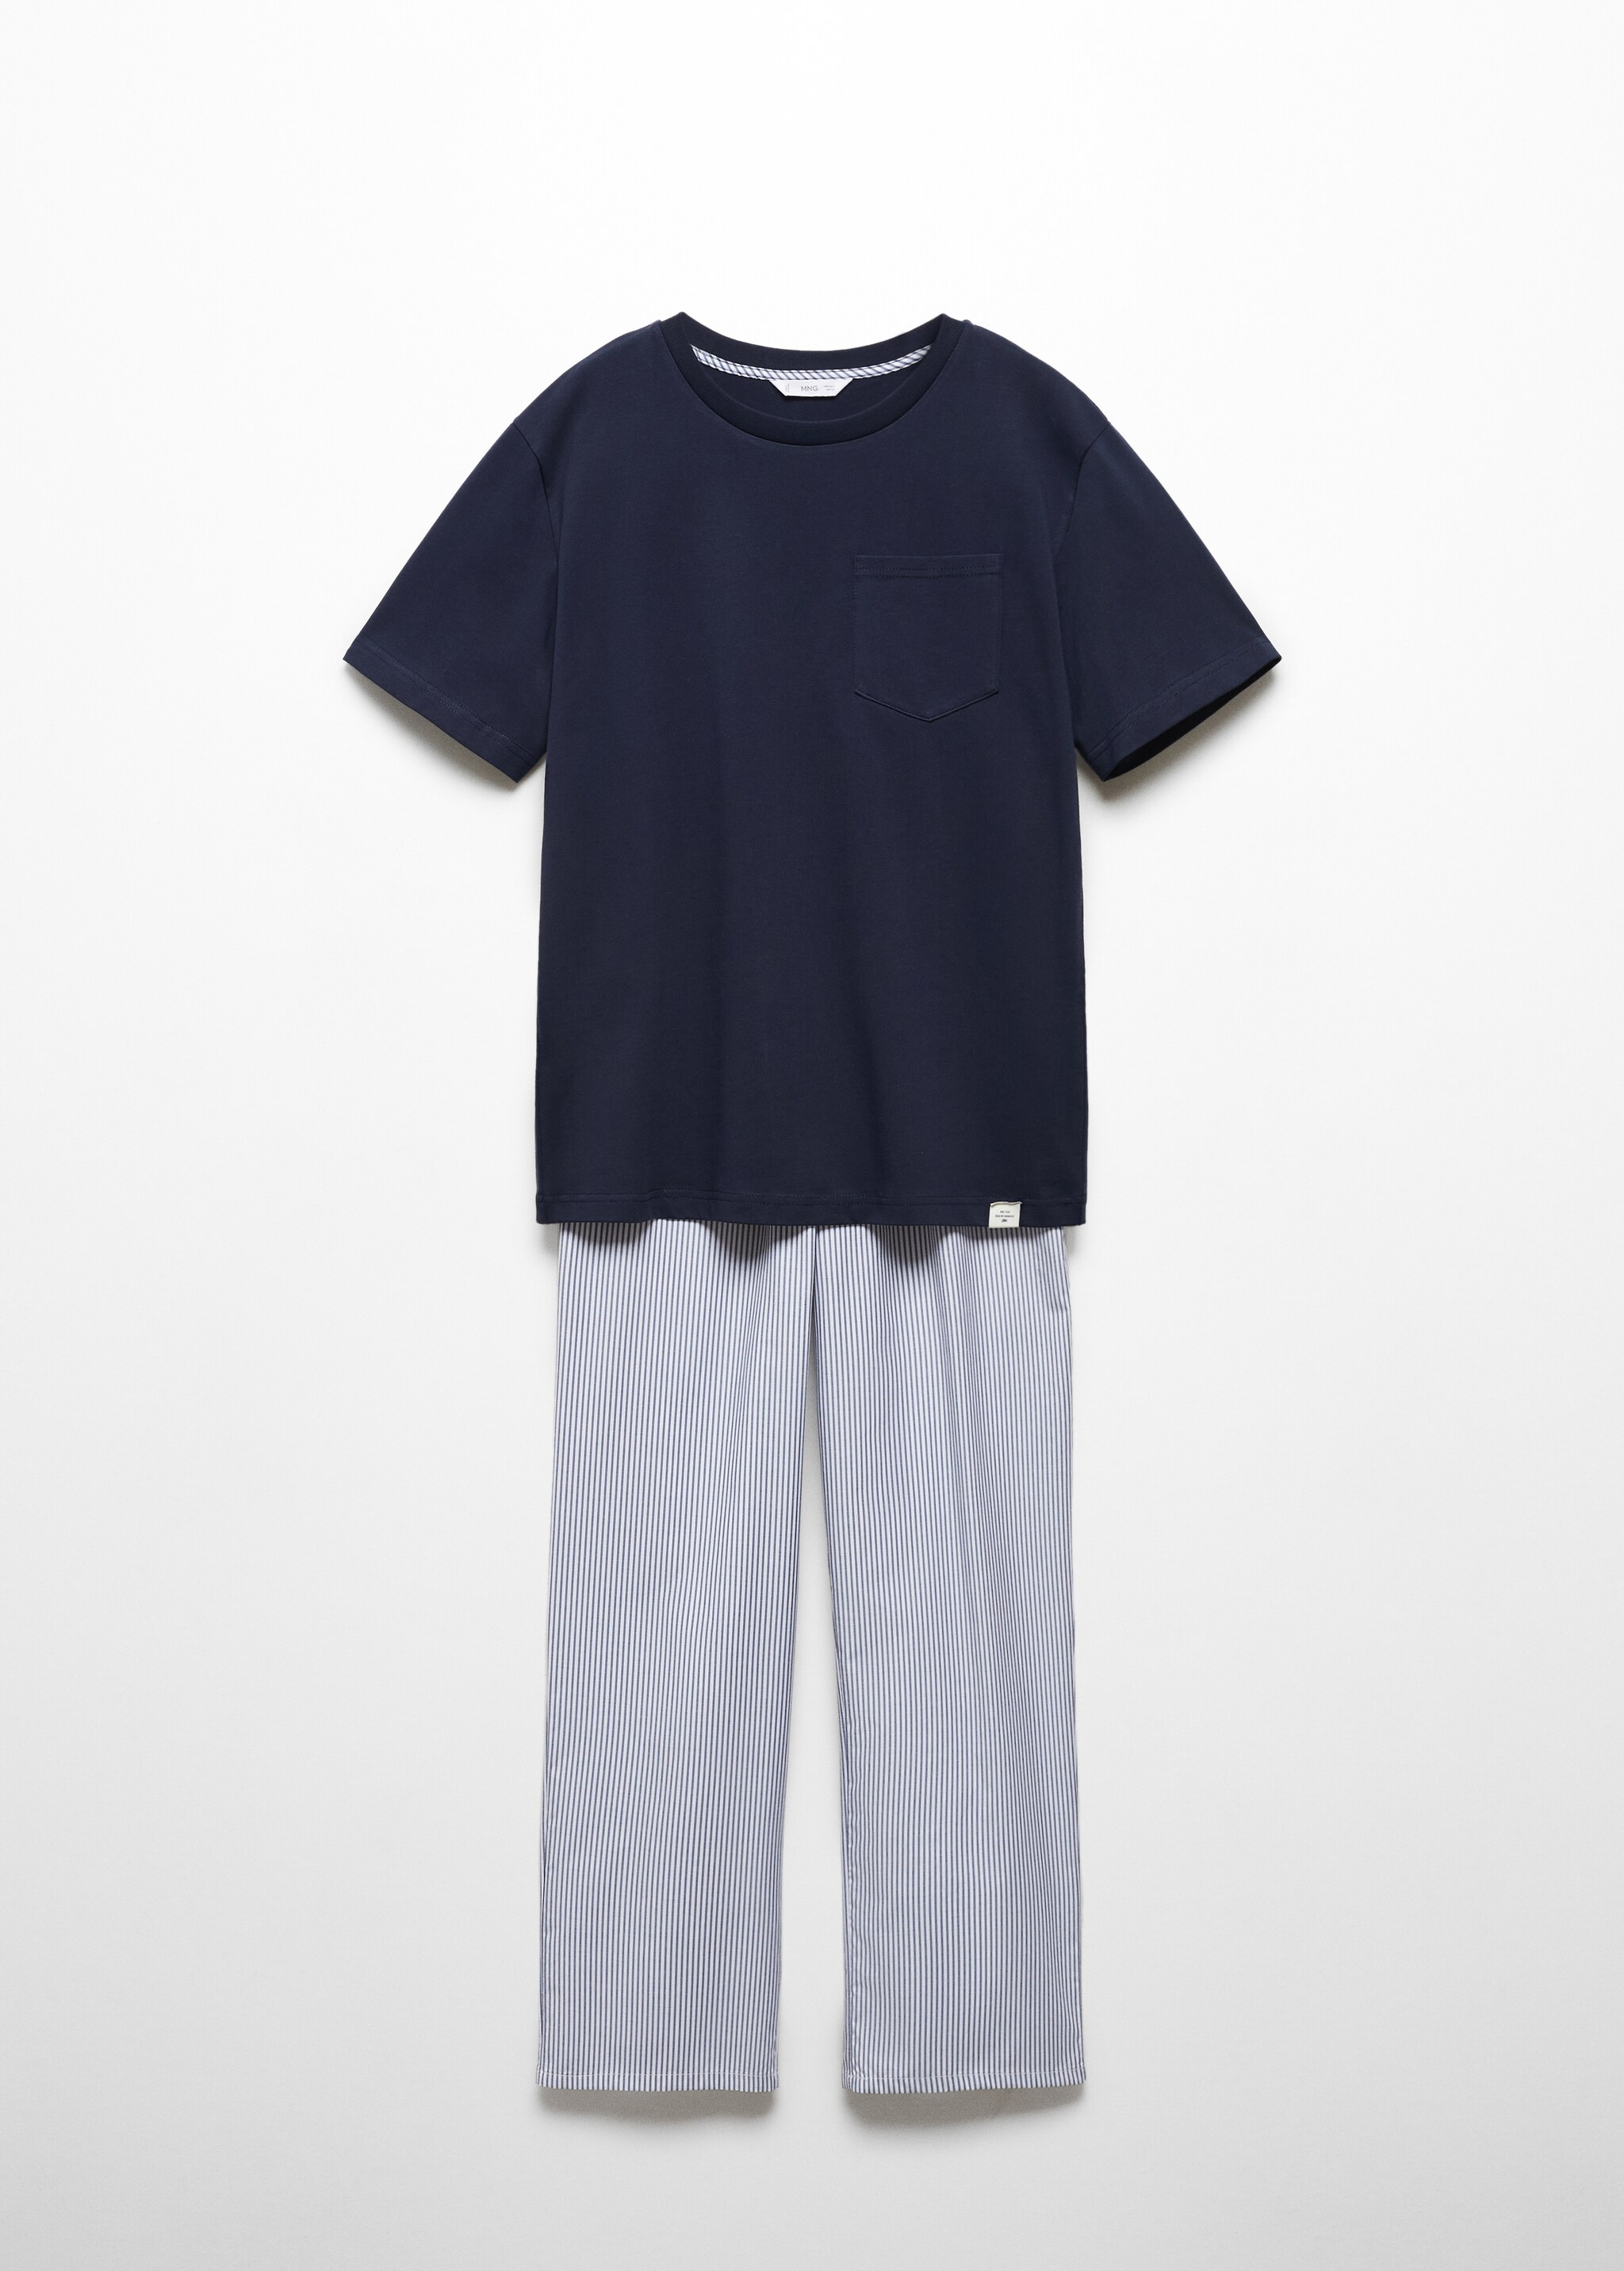 Pijama largo rayas - Artículo sin modelo